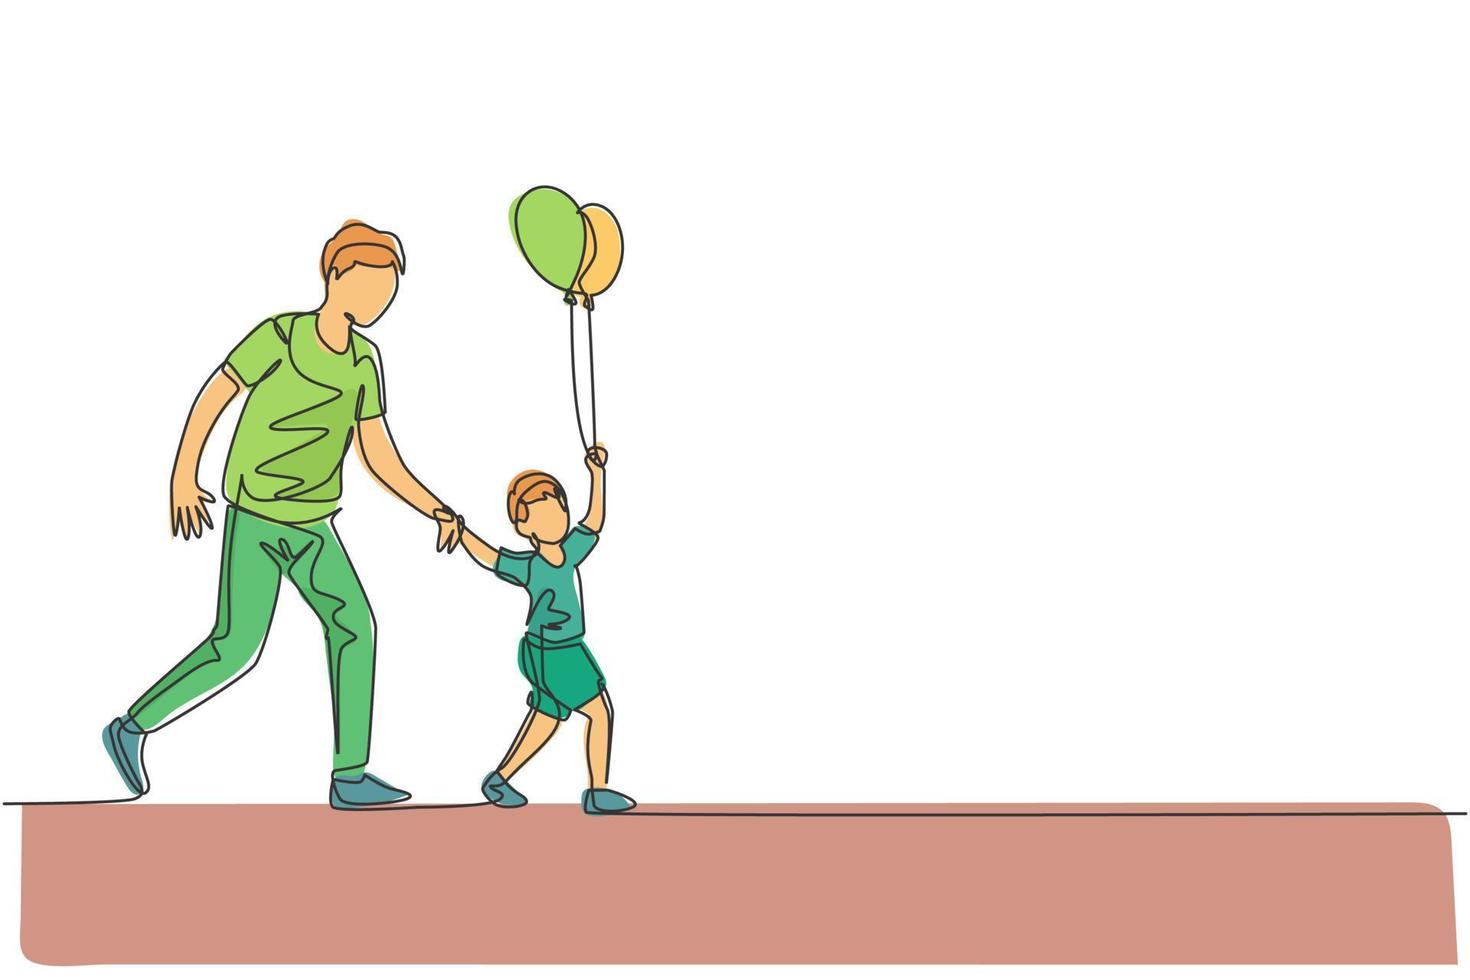 en kontinuerlig linjeteckning av den unga pappan och hans son går till nattkarnevalsfestivalen medan barnet håller ballongen. lycklig familj föräldraskap koncept. dynamisk enkel linje rita design vektor illustration